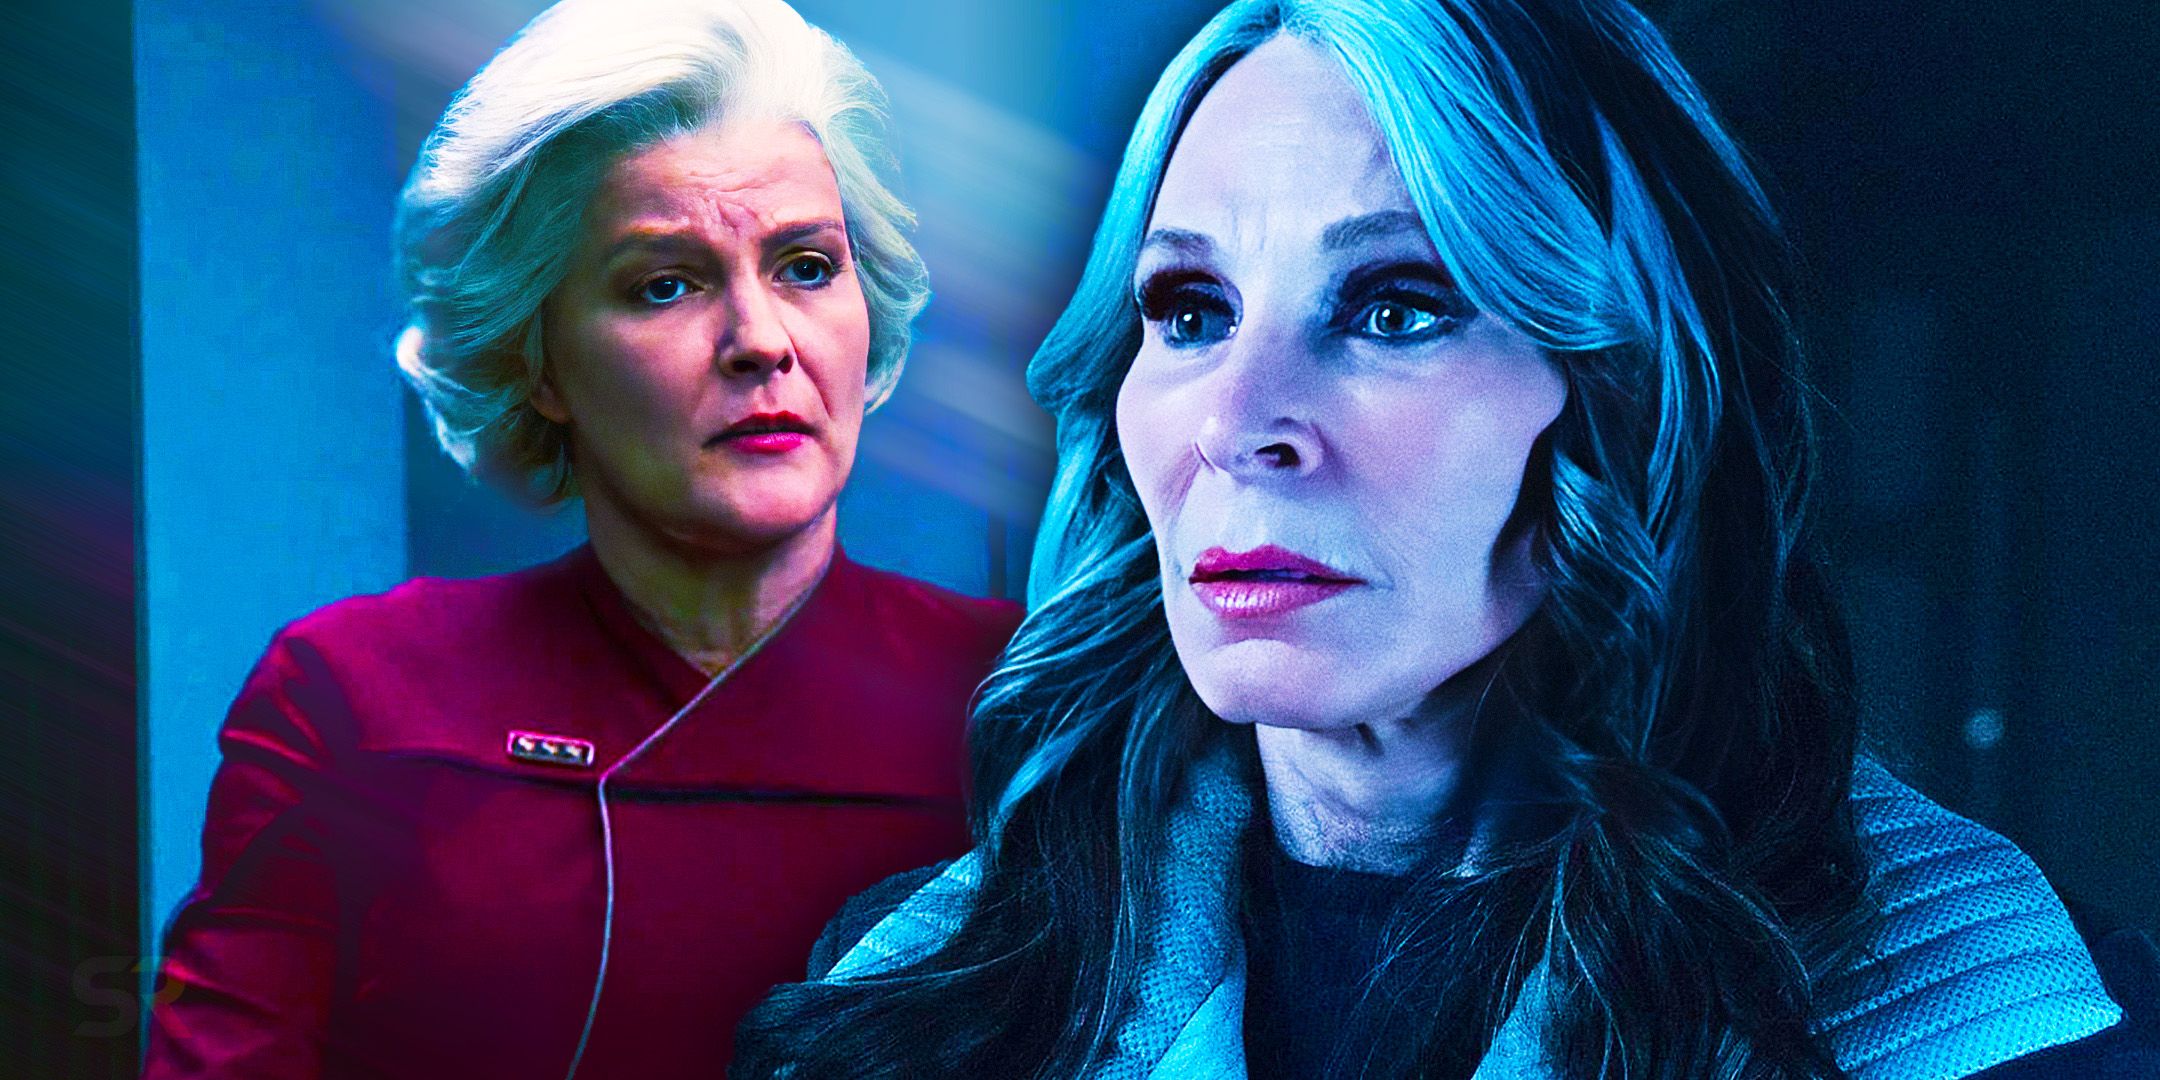 La primera reunión de Star Trek entre la almirante Janeway y la doctora Beverly Crusher finalmente se produce después de 29 años